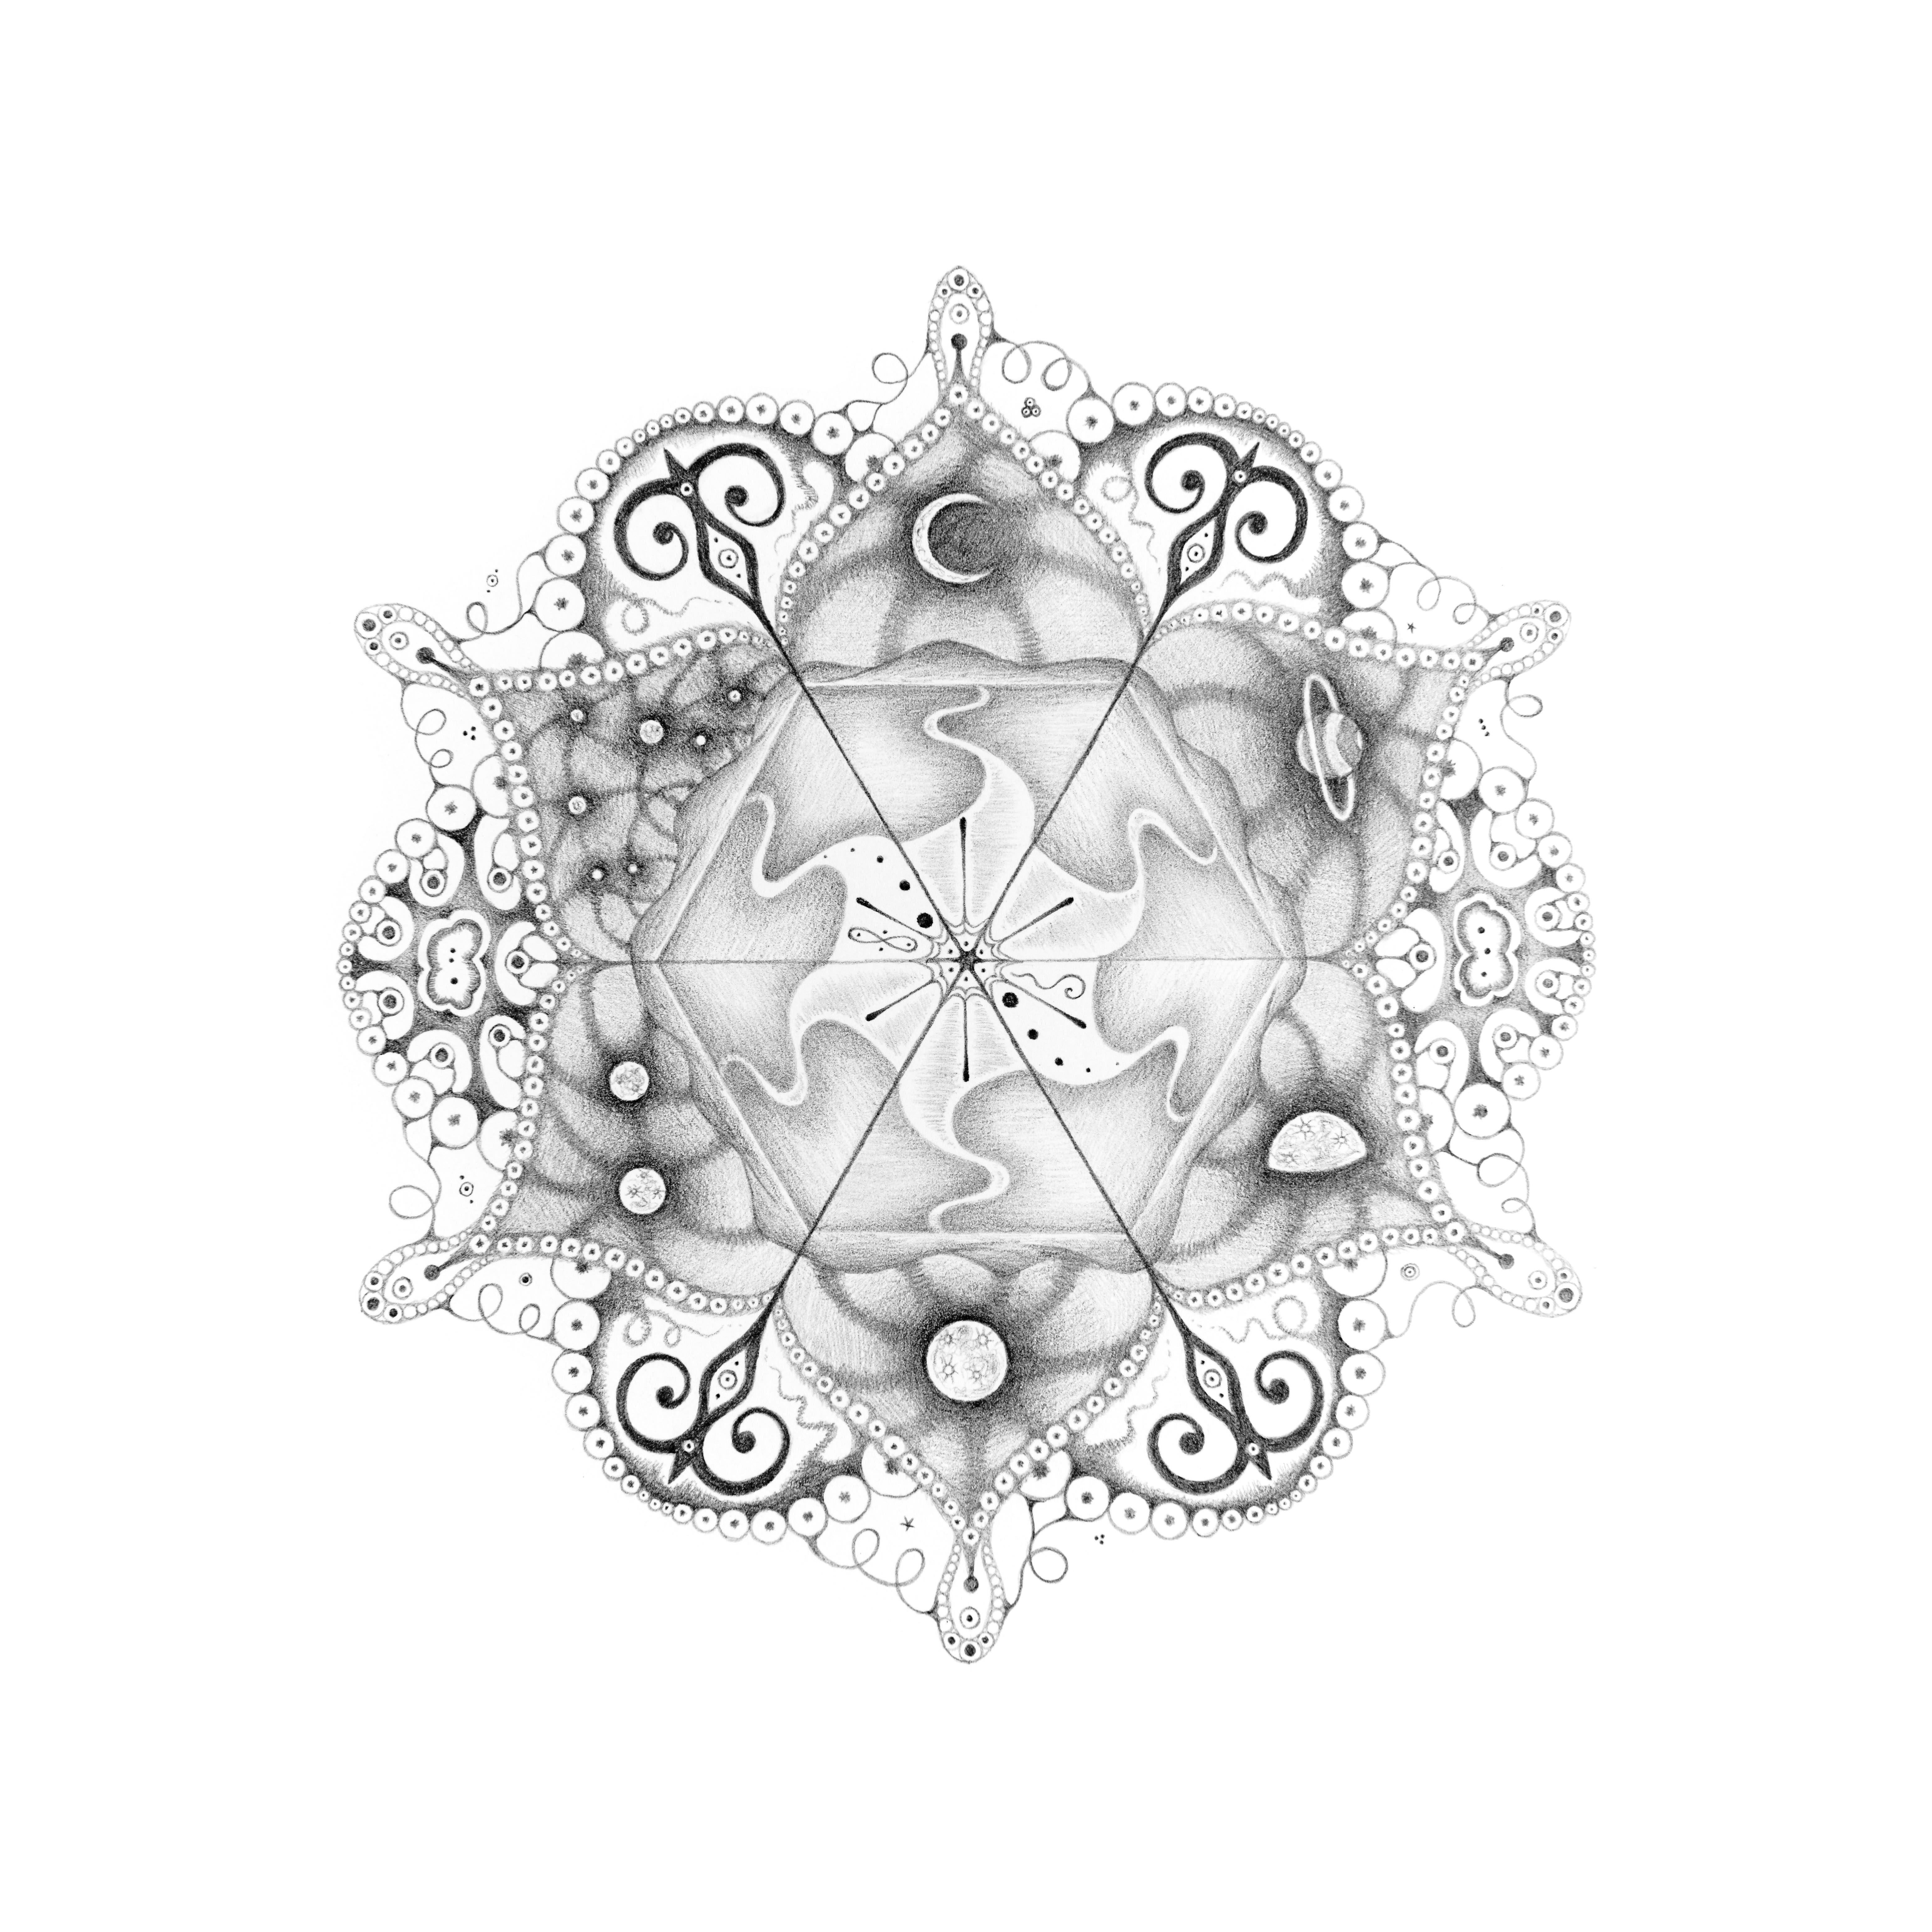 Michiyo Ihara Abstract Drawing - Snowflakes 108 Matrix, Planet and Crescent Moon Mandala Pencil Drawing